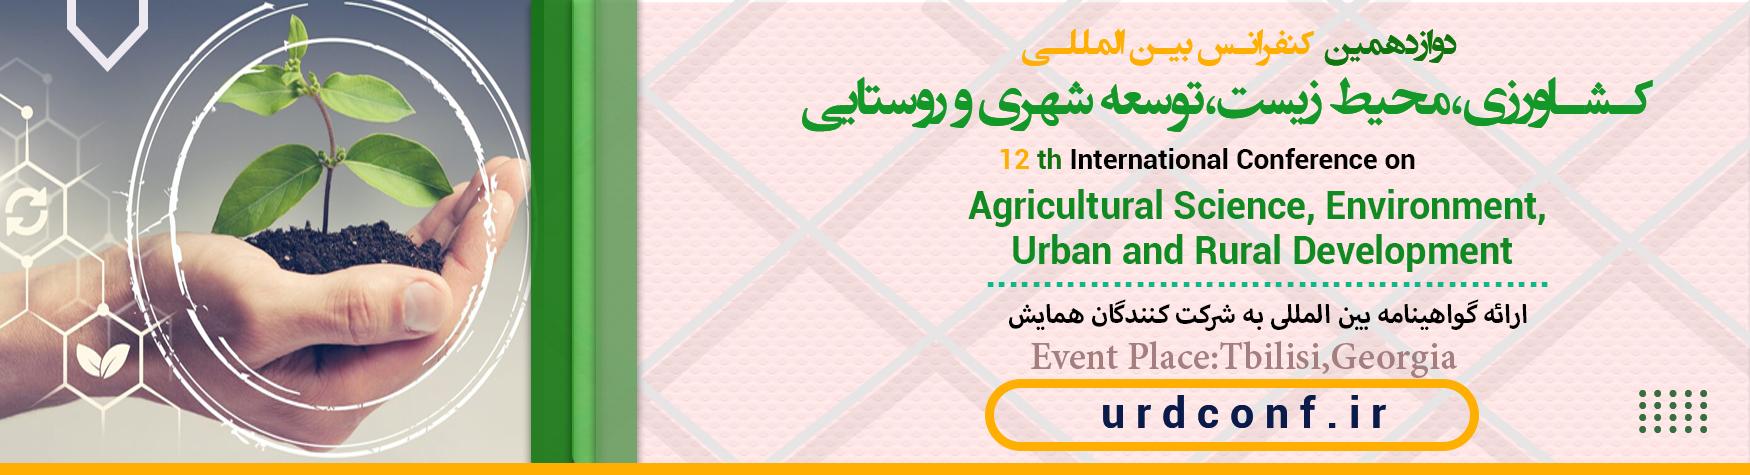 کنفرانس بین المللی کشاورزی،محیط زیست،توسعه شهری و روستایی	